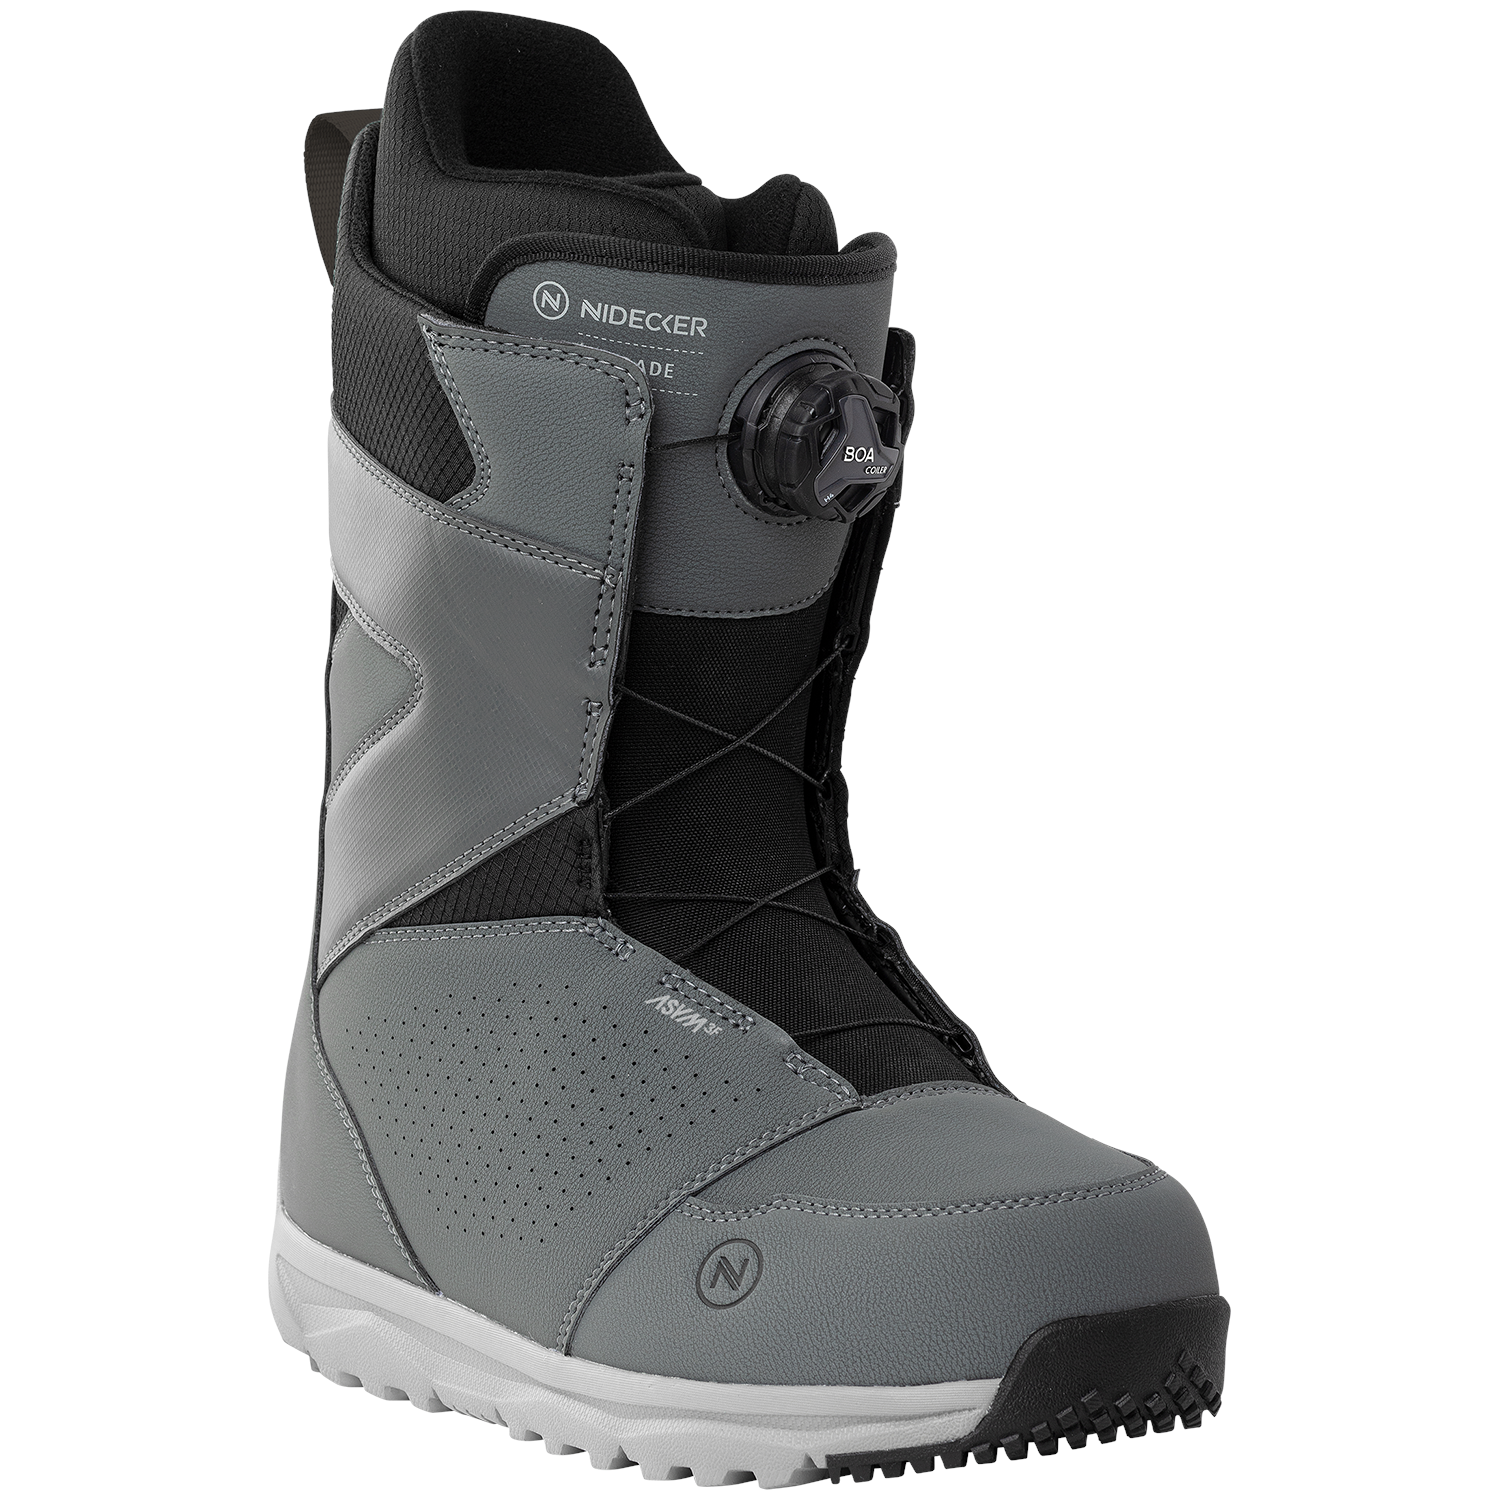 Ботинки для сноуборда Nidecker Cascade, серый ботинки для сноуборда мужские dreamscape серый черный